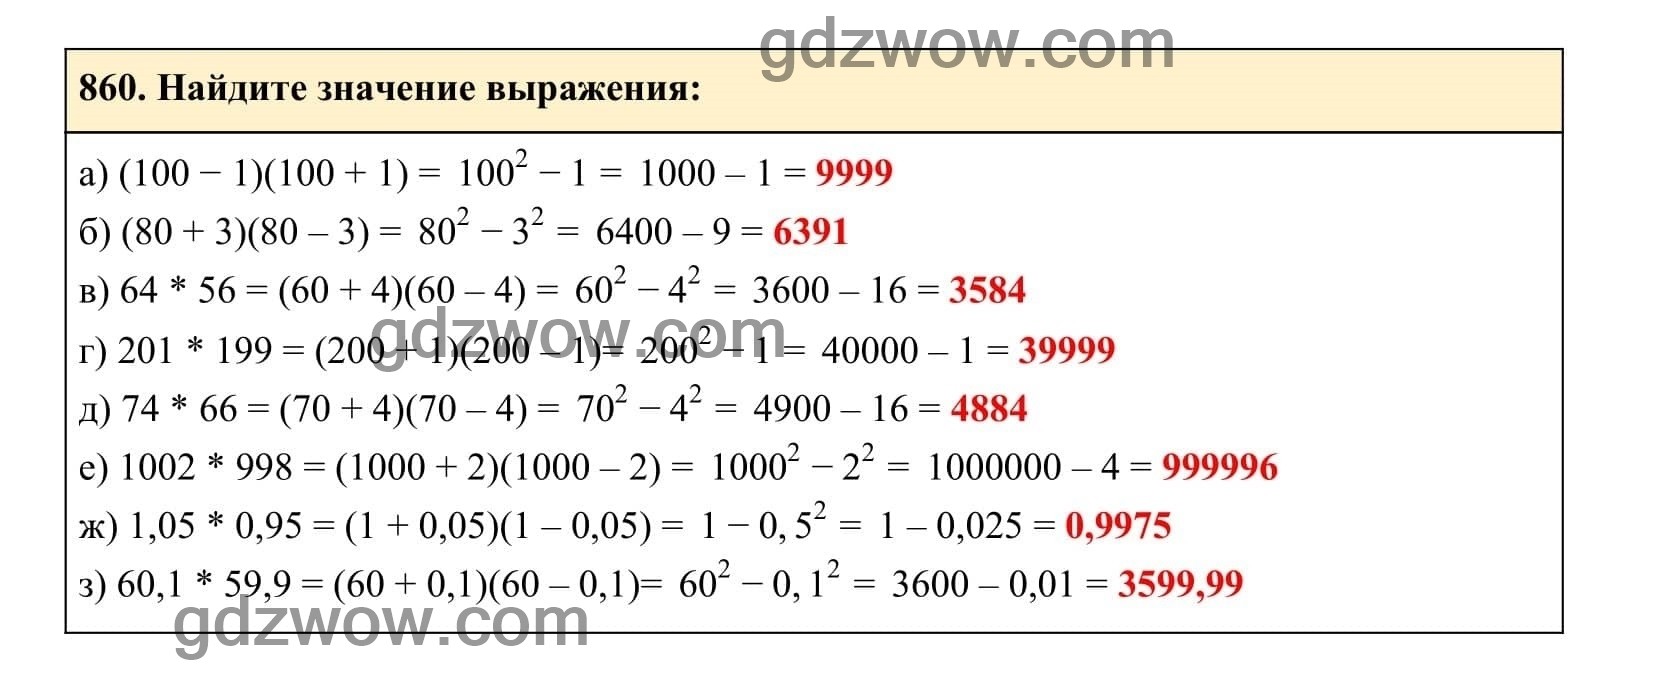 Упражнение 860 - ГДЗ по Алгебре 7 класс Учебник Макарычев (решебник) - GDZwow